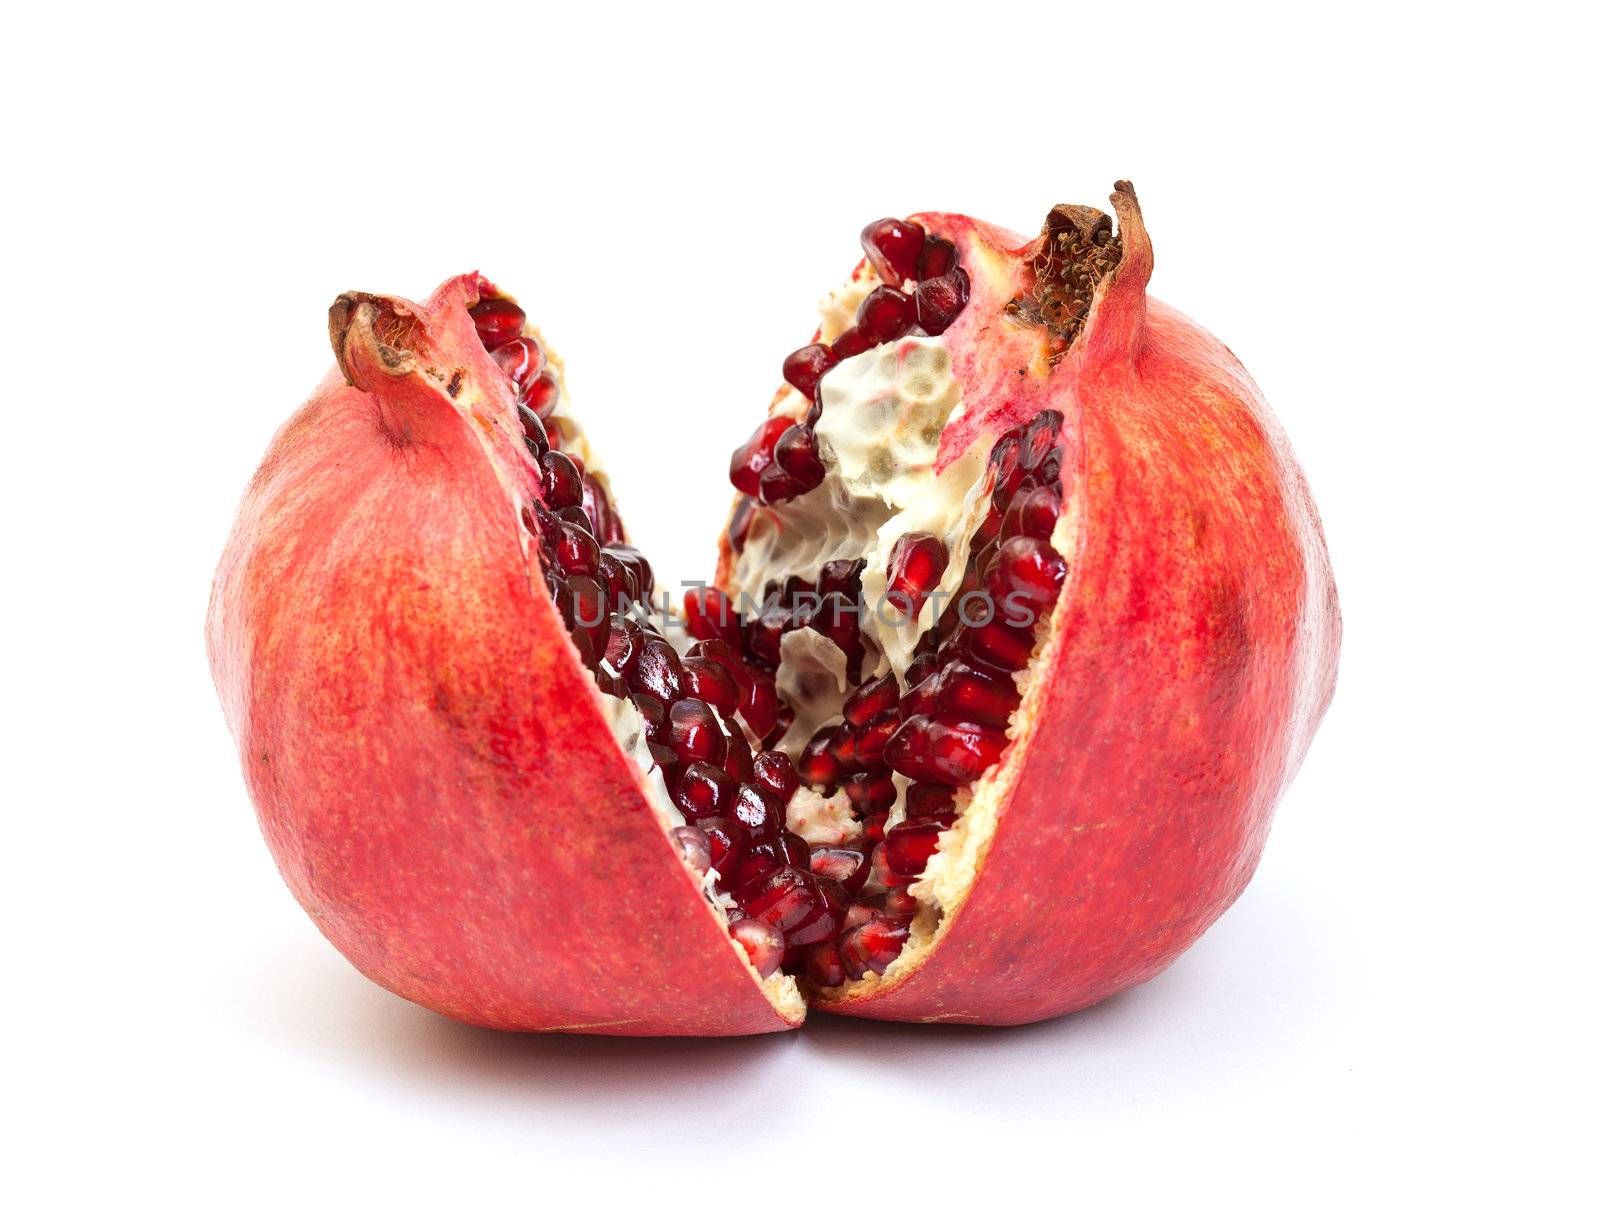 Broken pomegranate fruit on white background